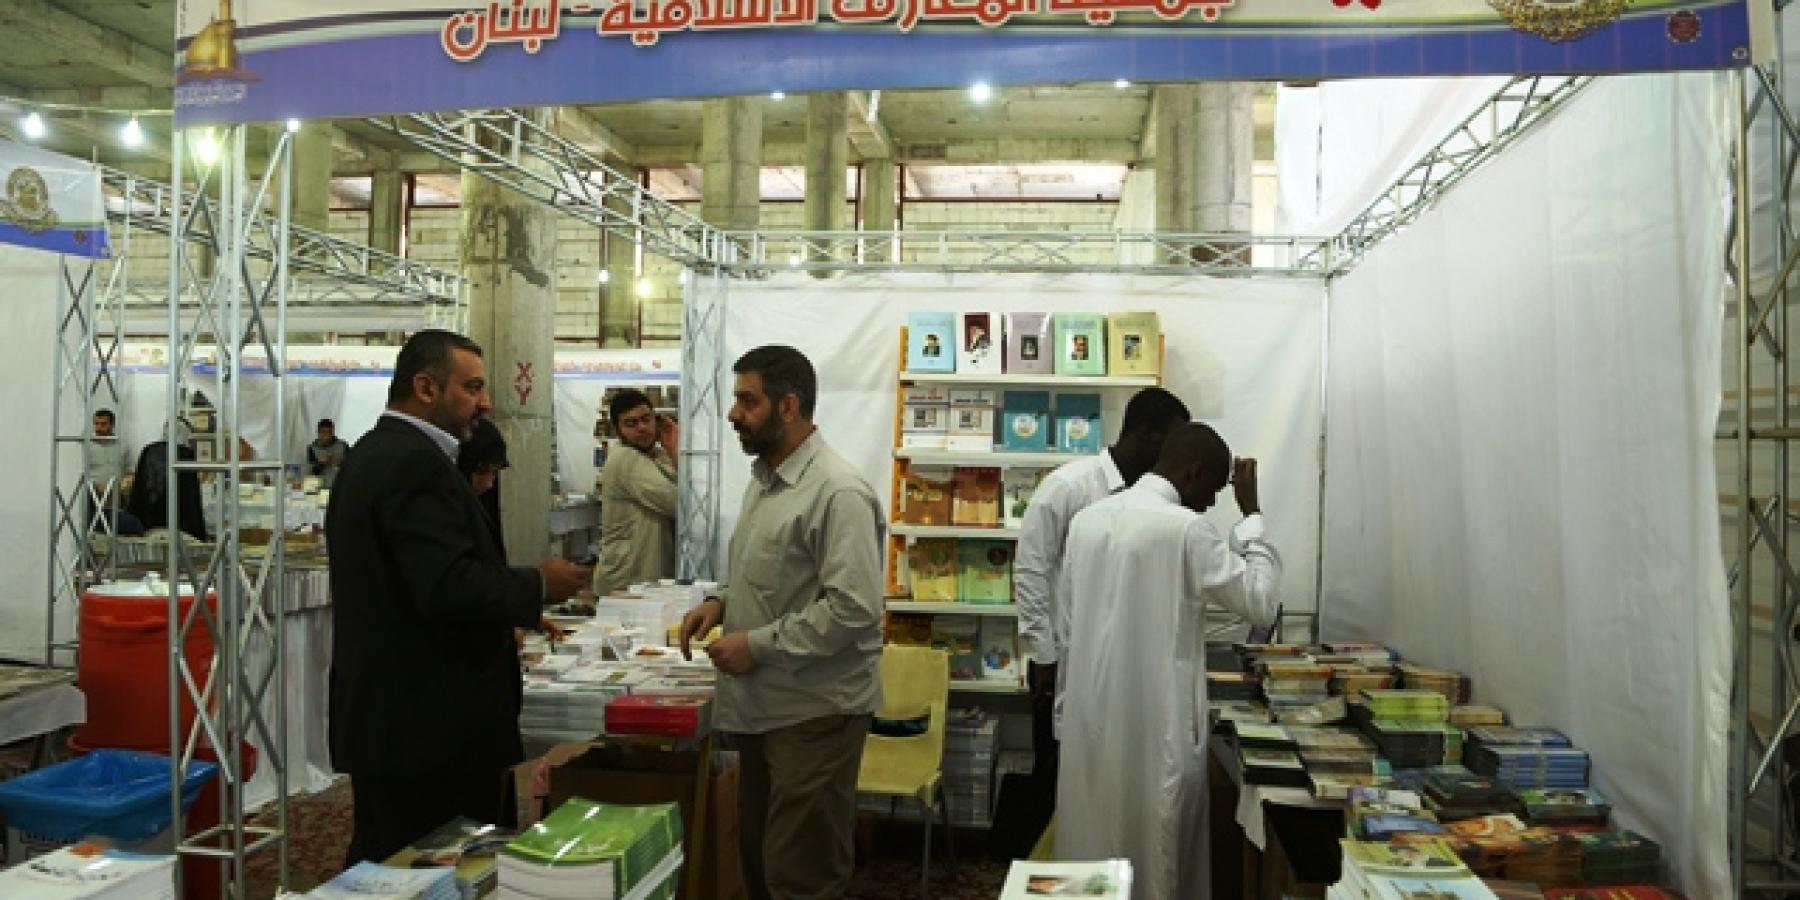 معرض الكتاب الدولي في العتبة العلوية المقدسة يشهد مشاركة عربية متميزة في نسخته السابعة 